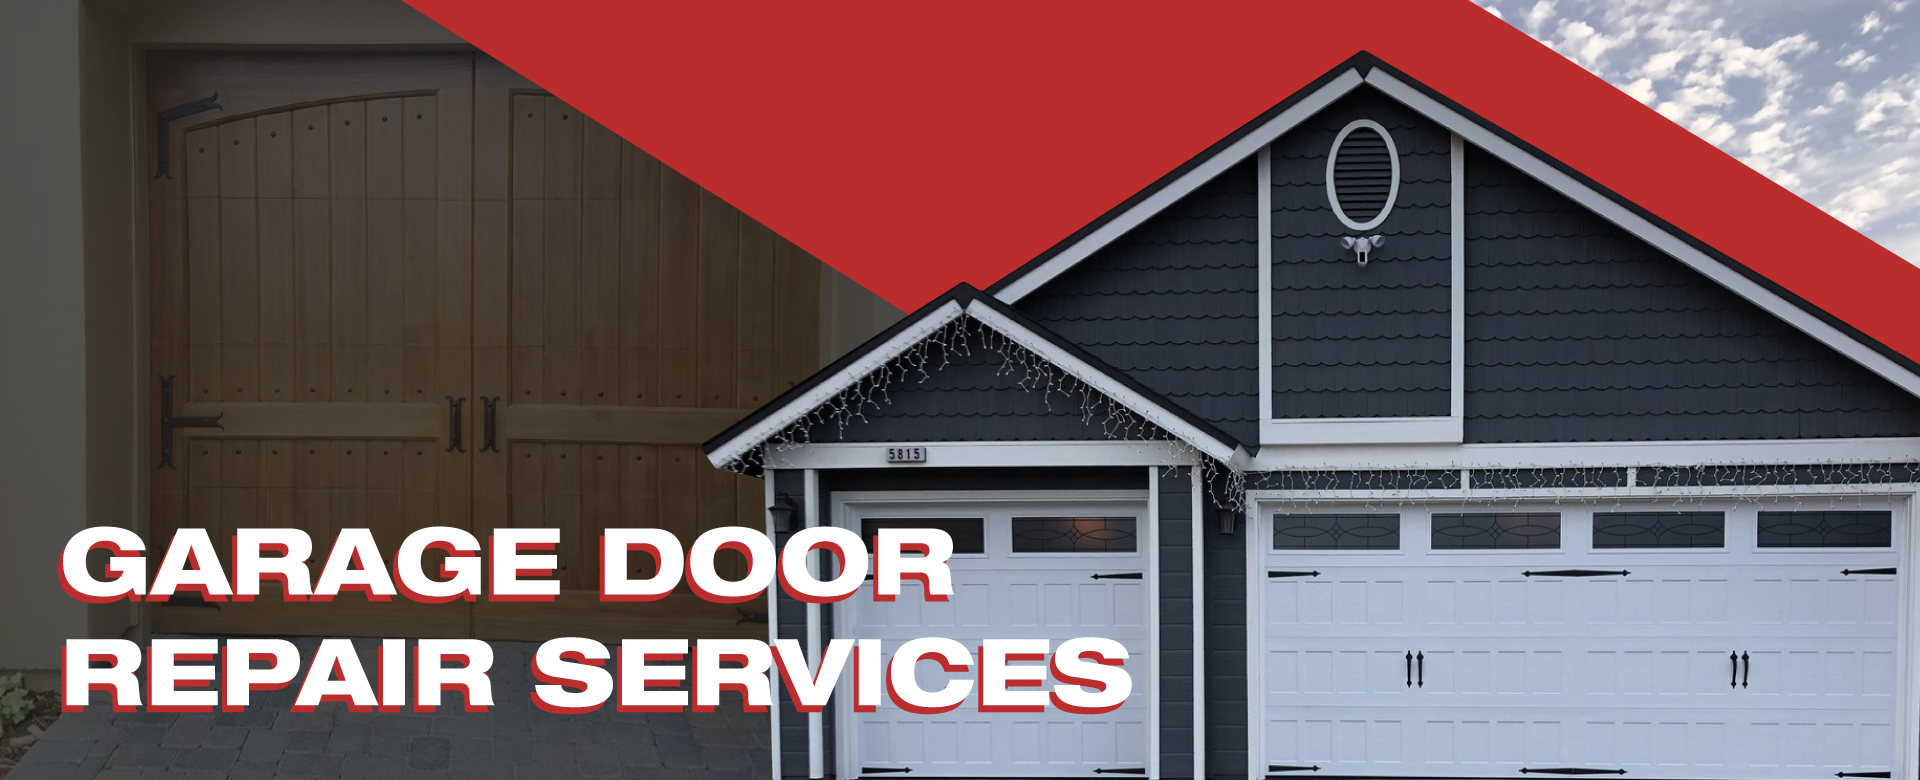 Emergency Garage Door Repair, Installation & Replacement Services